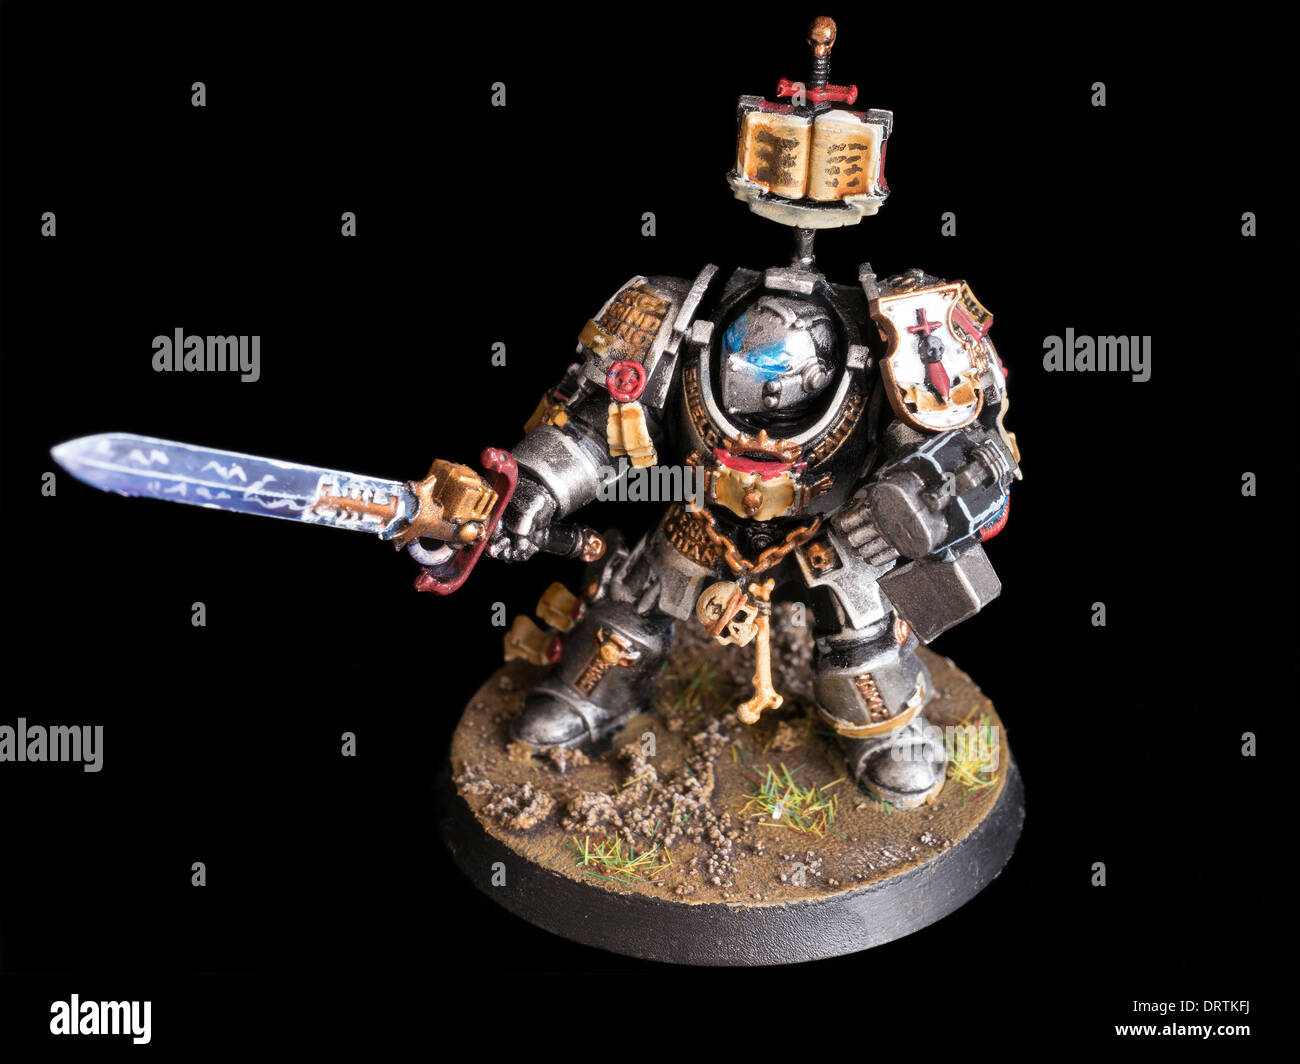 El caballero gris Terminator pintados a mano de Games Workshop Warhammer 40,000 figura en miniatura Foto de stock